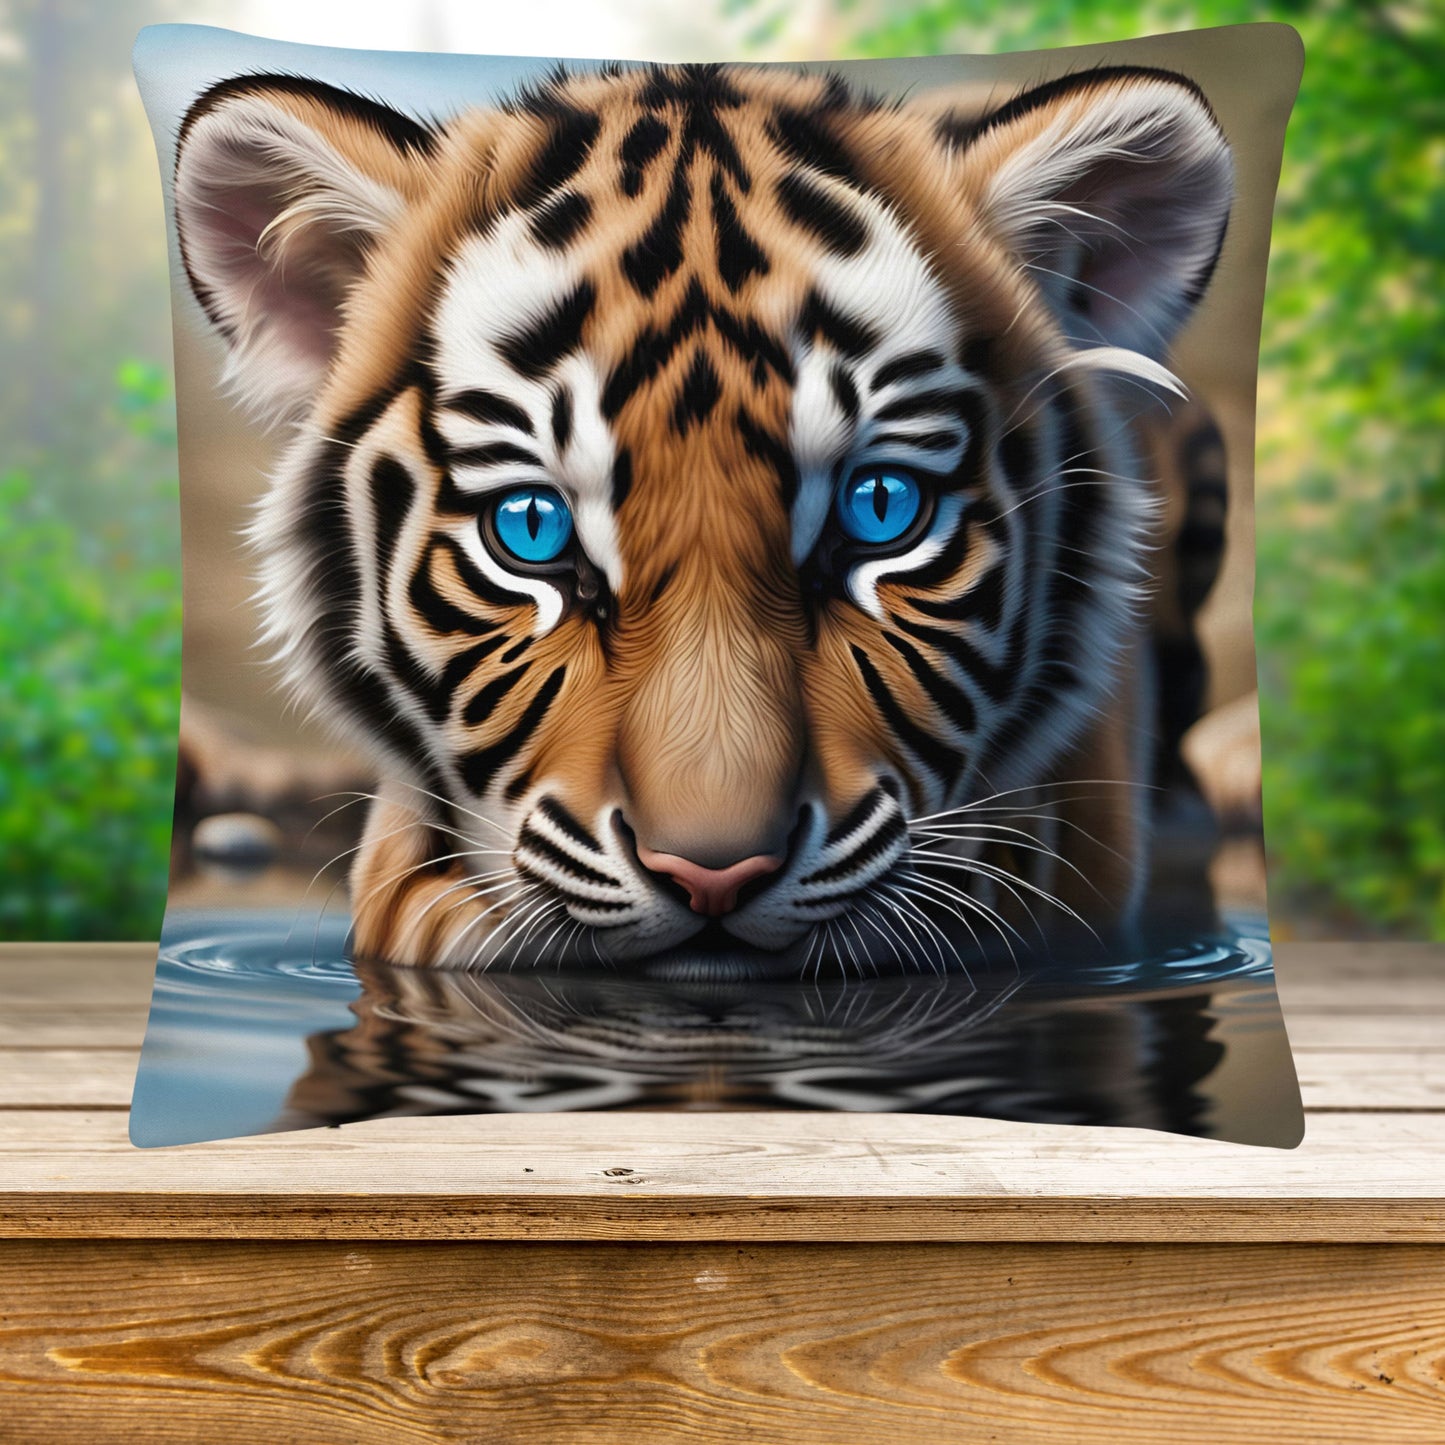 Tigerbaby mit blauen Augen - Kissen